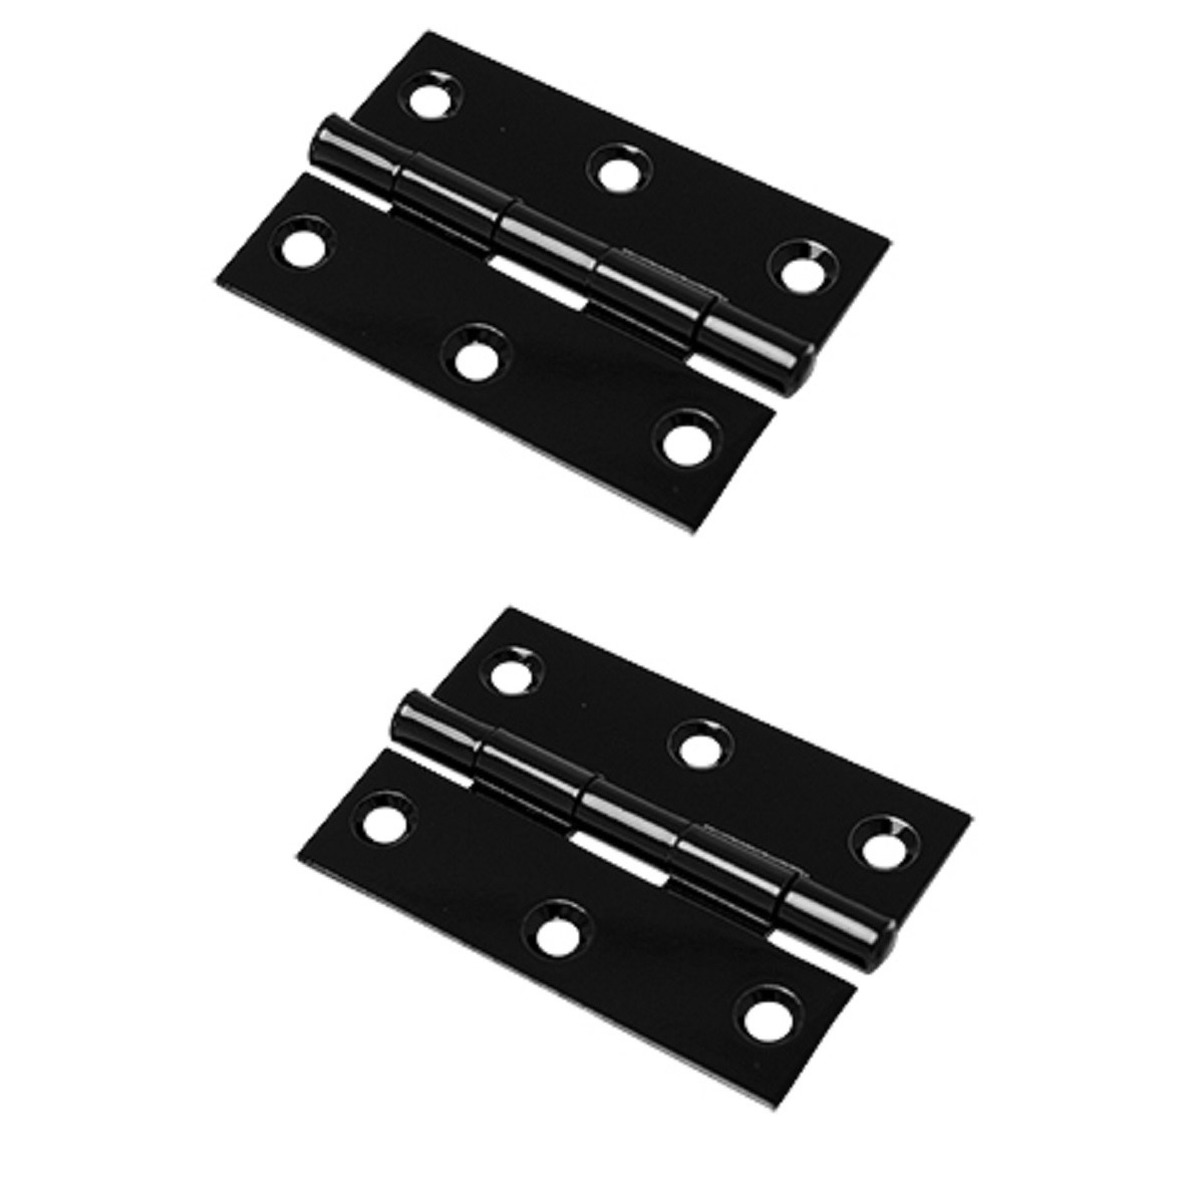 4x stuks scharnier-bouwscharnier-meubelscharnieren zwart ijzer met rechte hoeken 9 x 9 x 2 cm